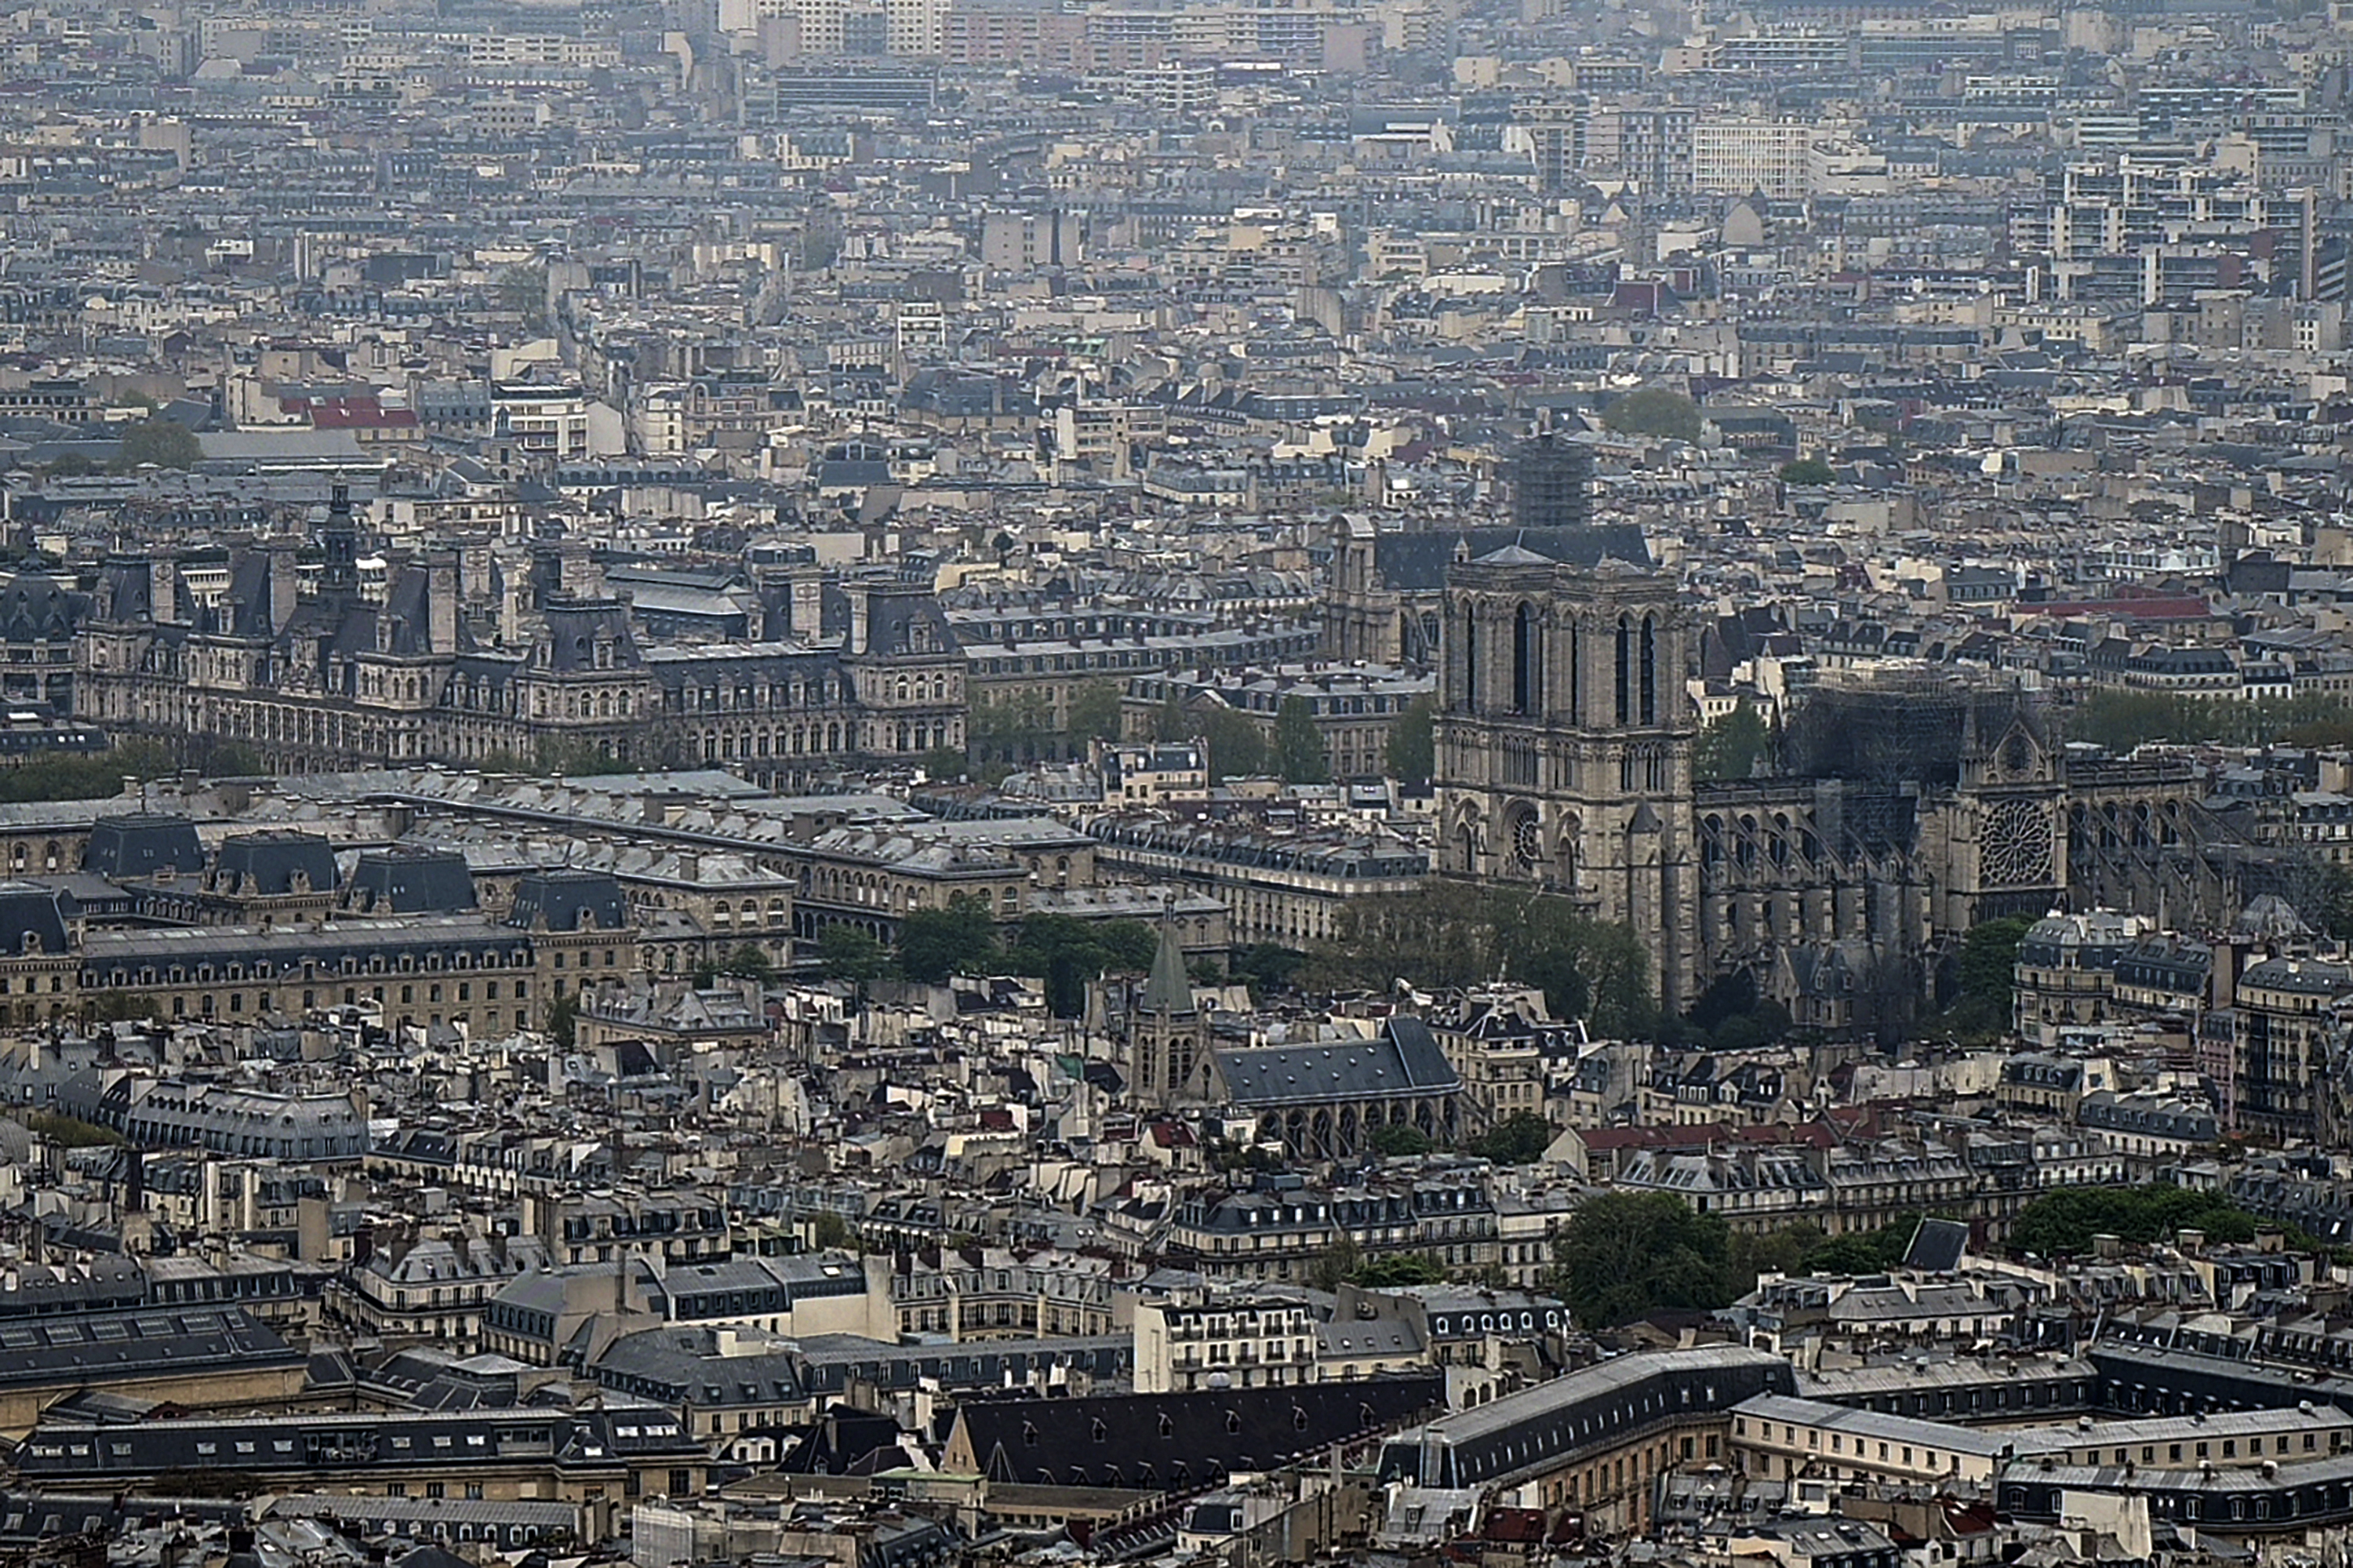 Entre complots y teorías conspirativas, internautas explican qué pudo producir el incendio en Notre Dame